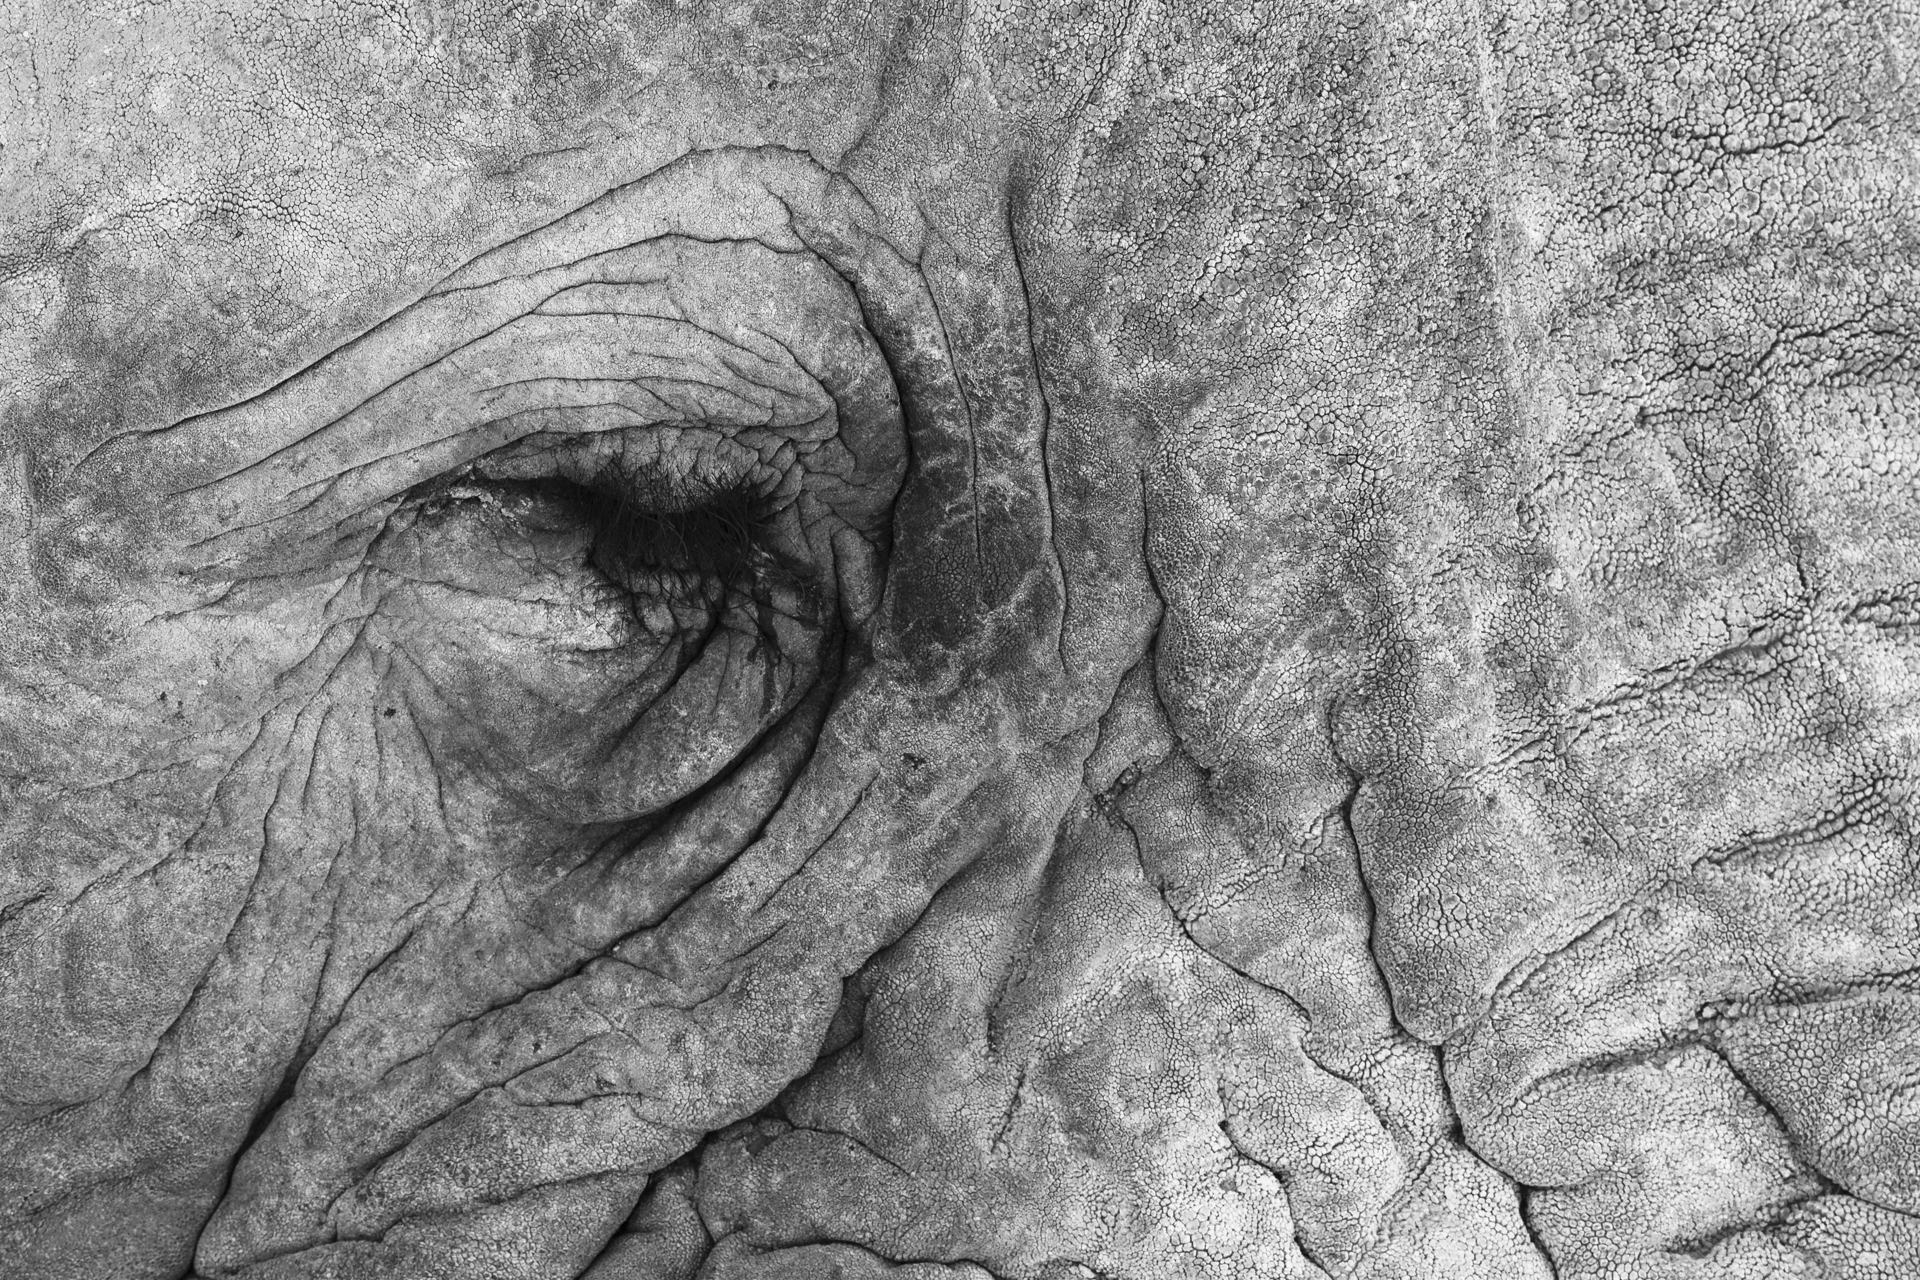 Primo piano in bianco e nero dello sguardo di un bellissimo elefante africano (Loxodonta africana) in Namibia African elephant (Loxodonta africana) detail of skin and eyes in black and white, Namibia